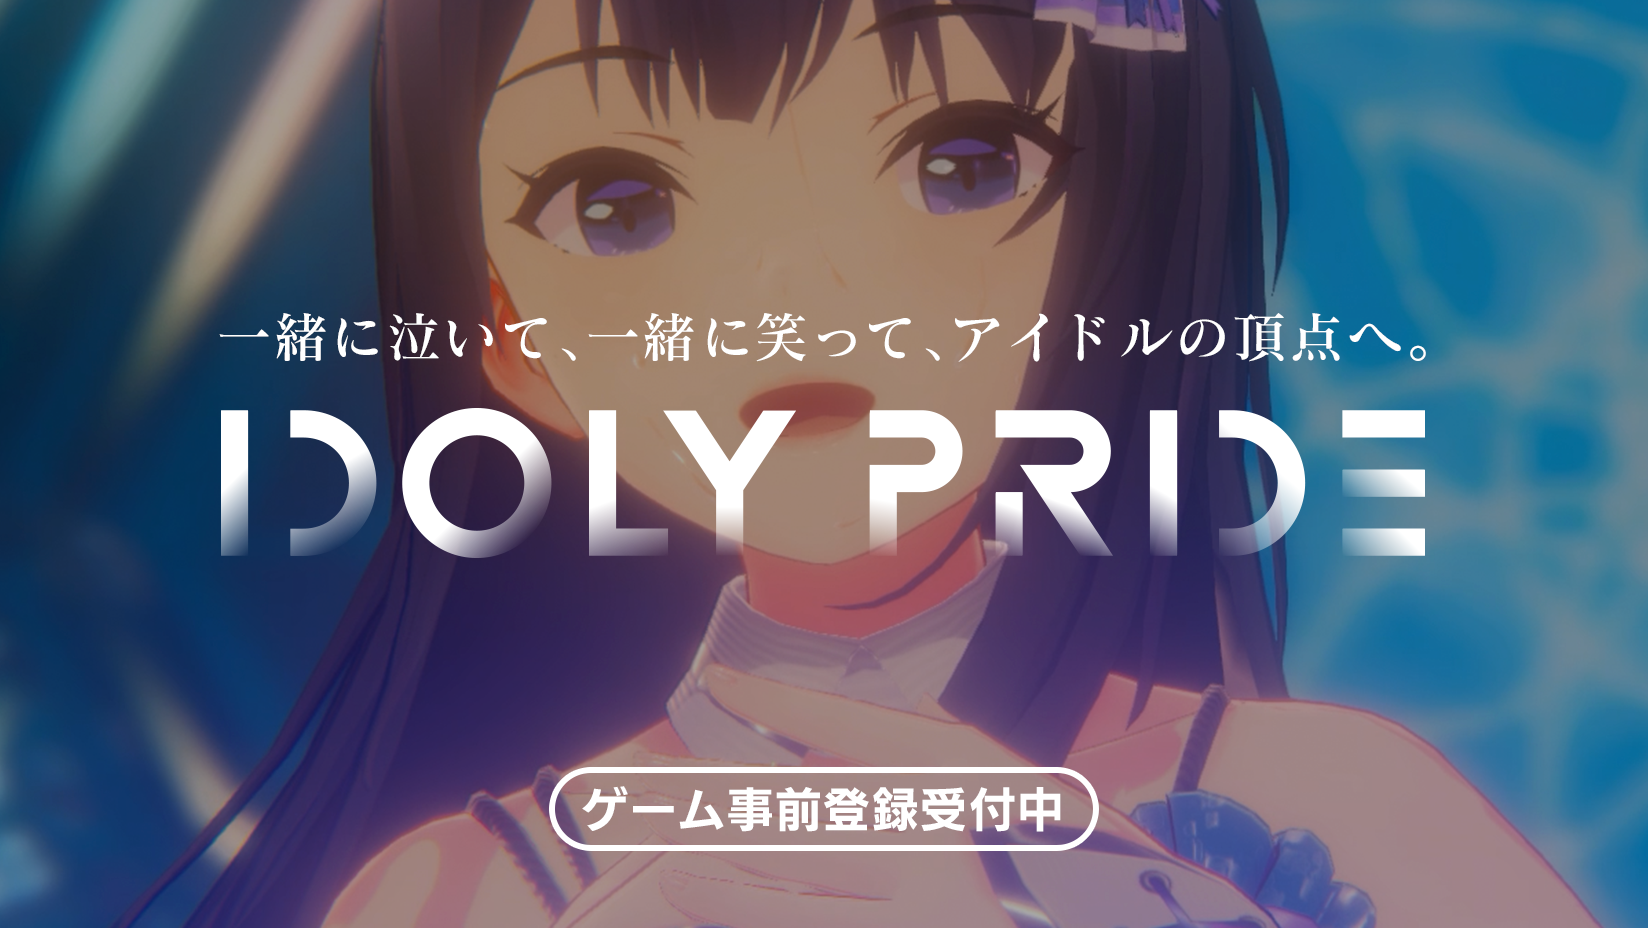 スマホゲームが今春配信決定 事前登録受付中 Idoly Pride 公式サイト